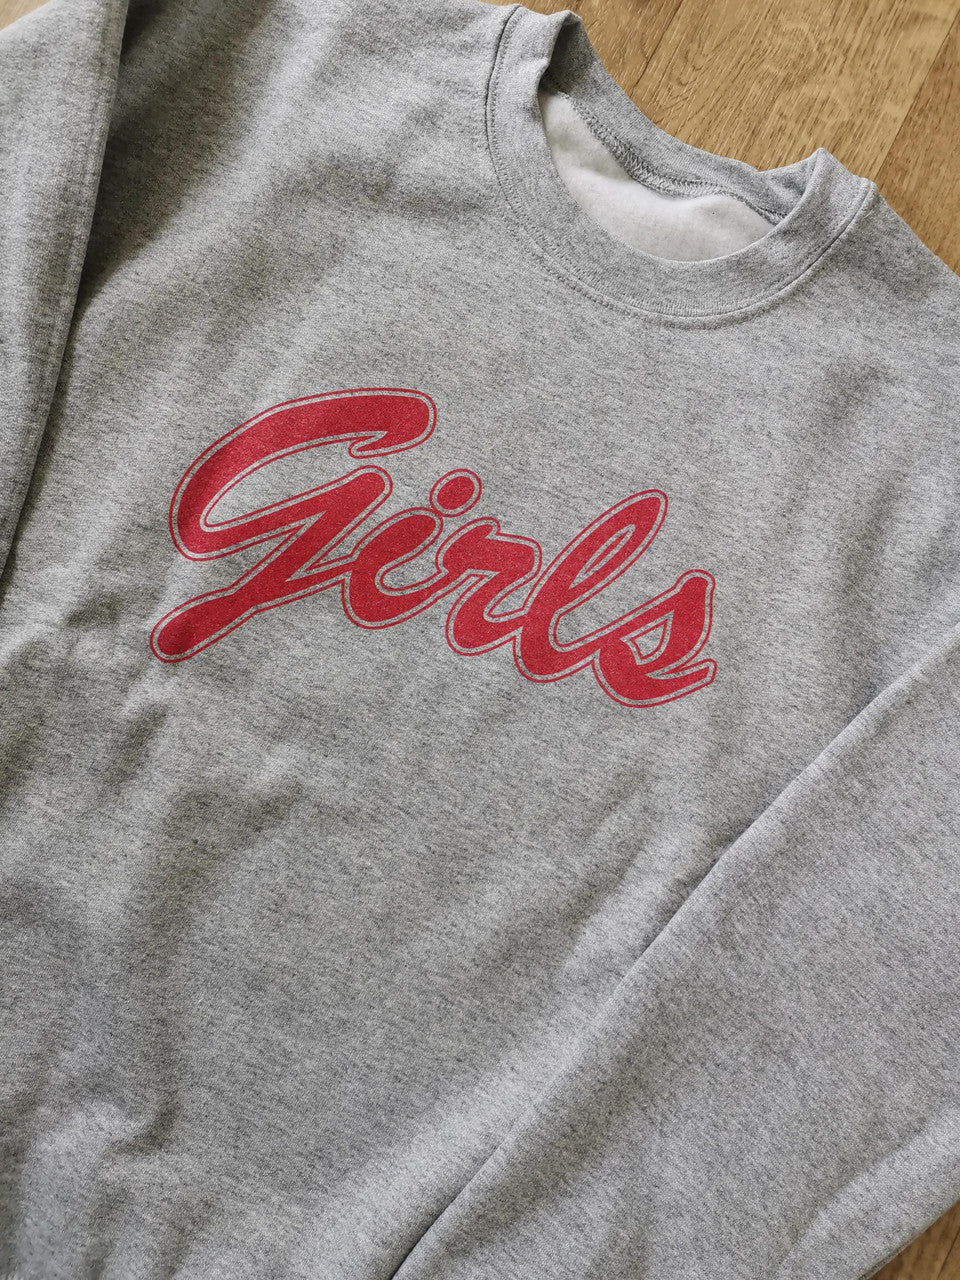 Monica Girls KiSS Unisex Premium Sweatshirt - Courtney Cox Gellar Friends TV Show Inspired - 90s Sport